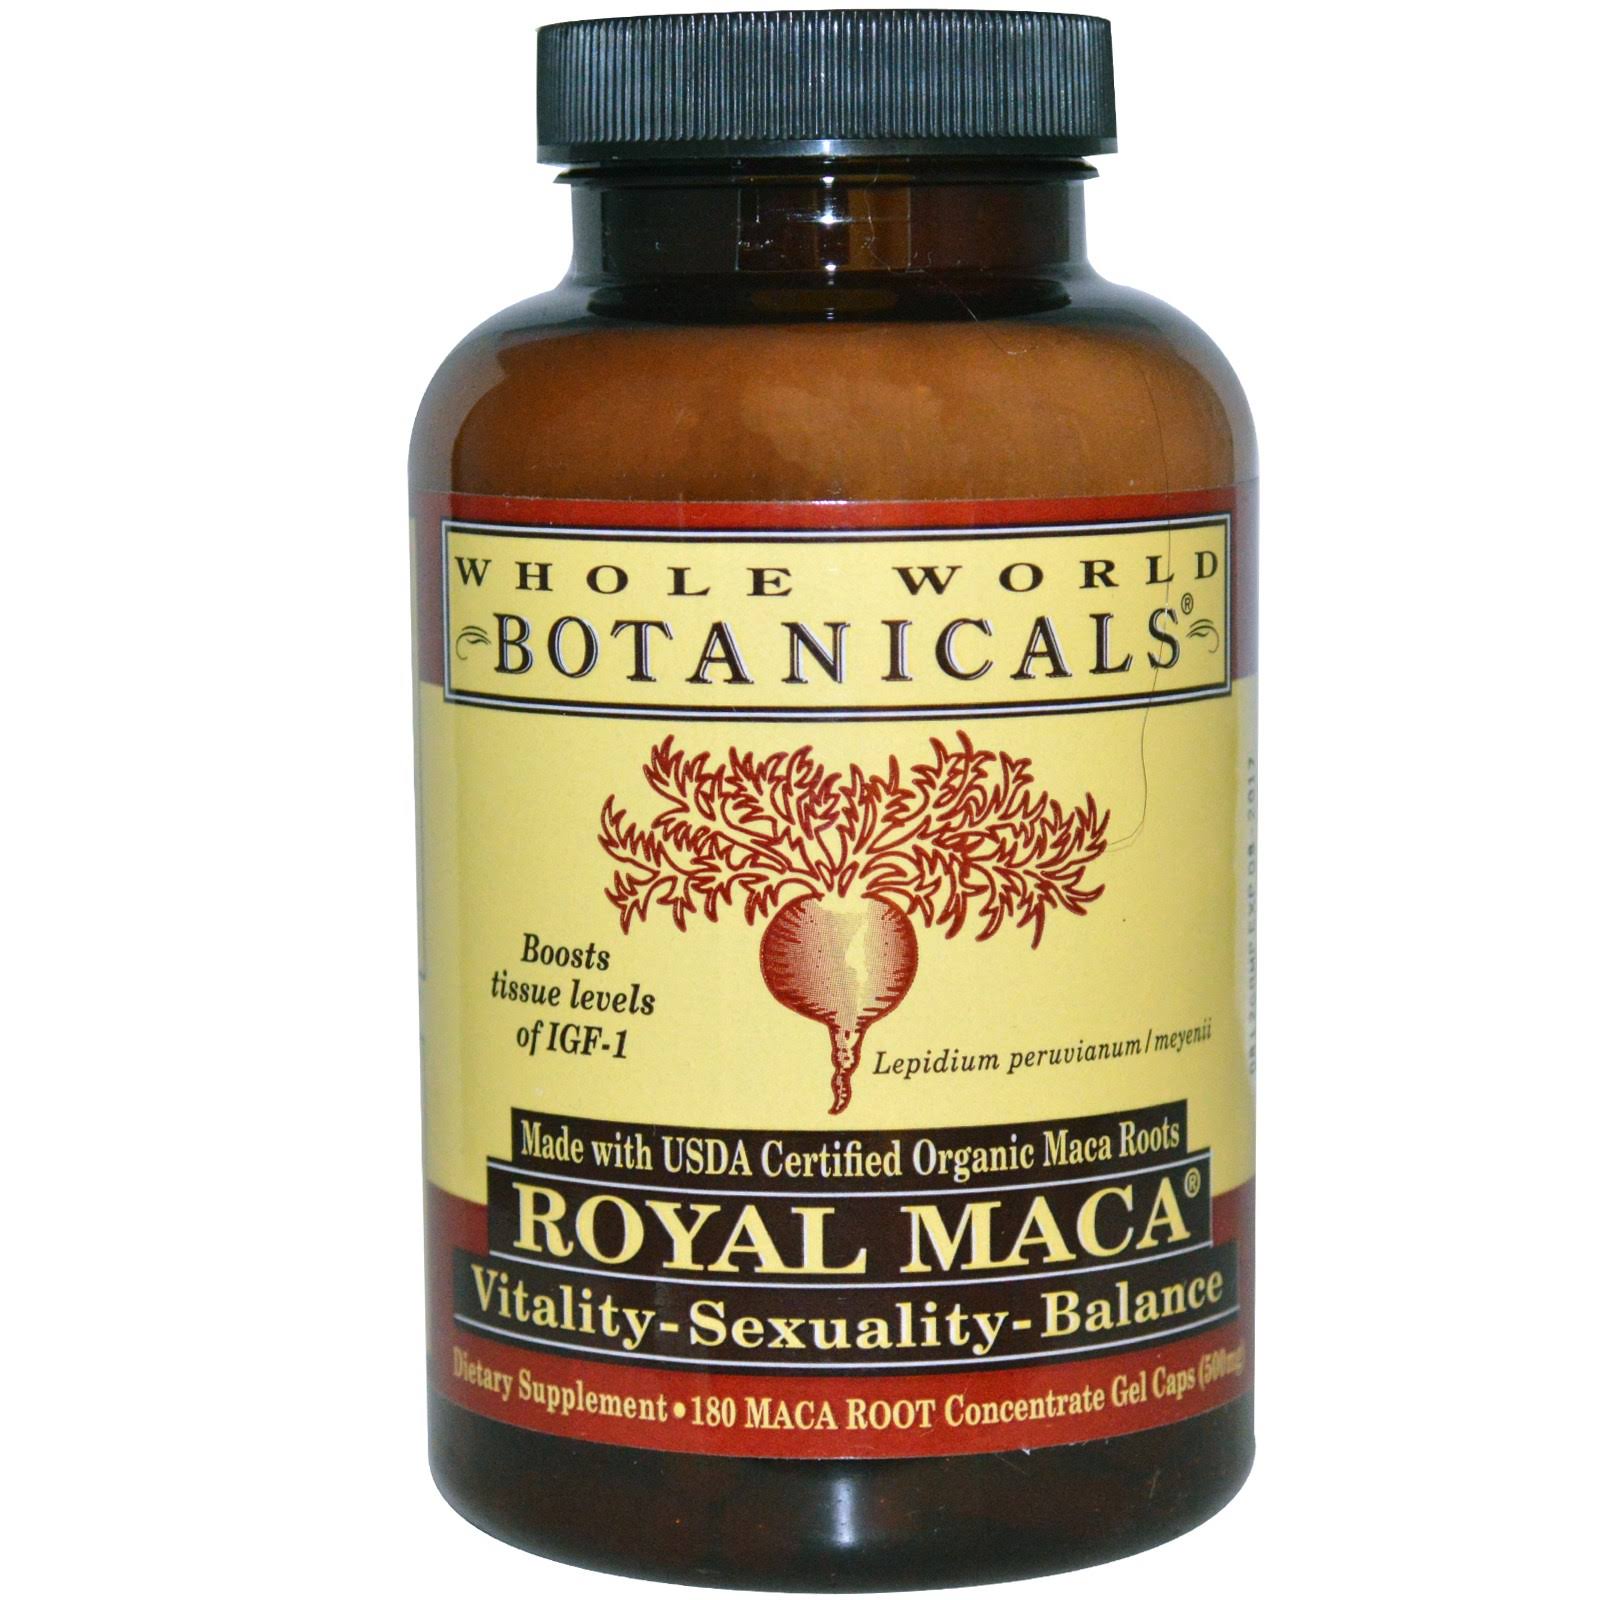 Whole World Botanicals Organic Royal Maca Capsules - x180